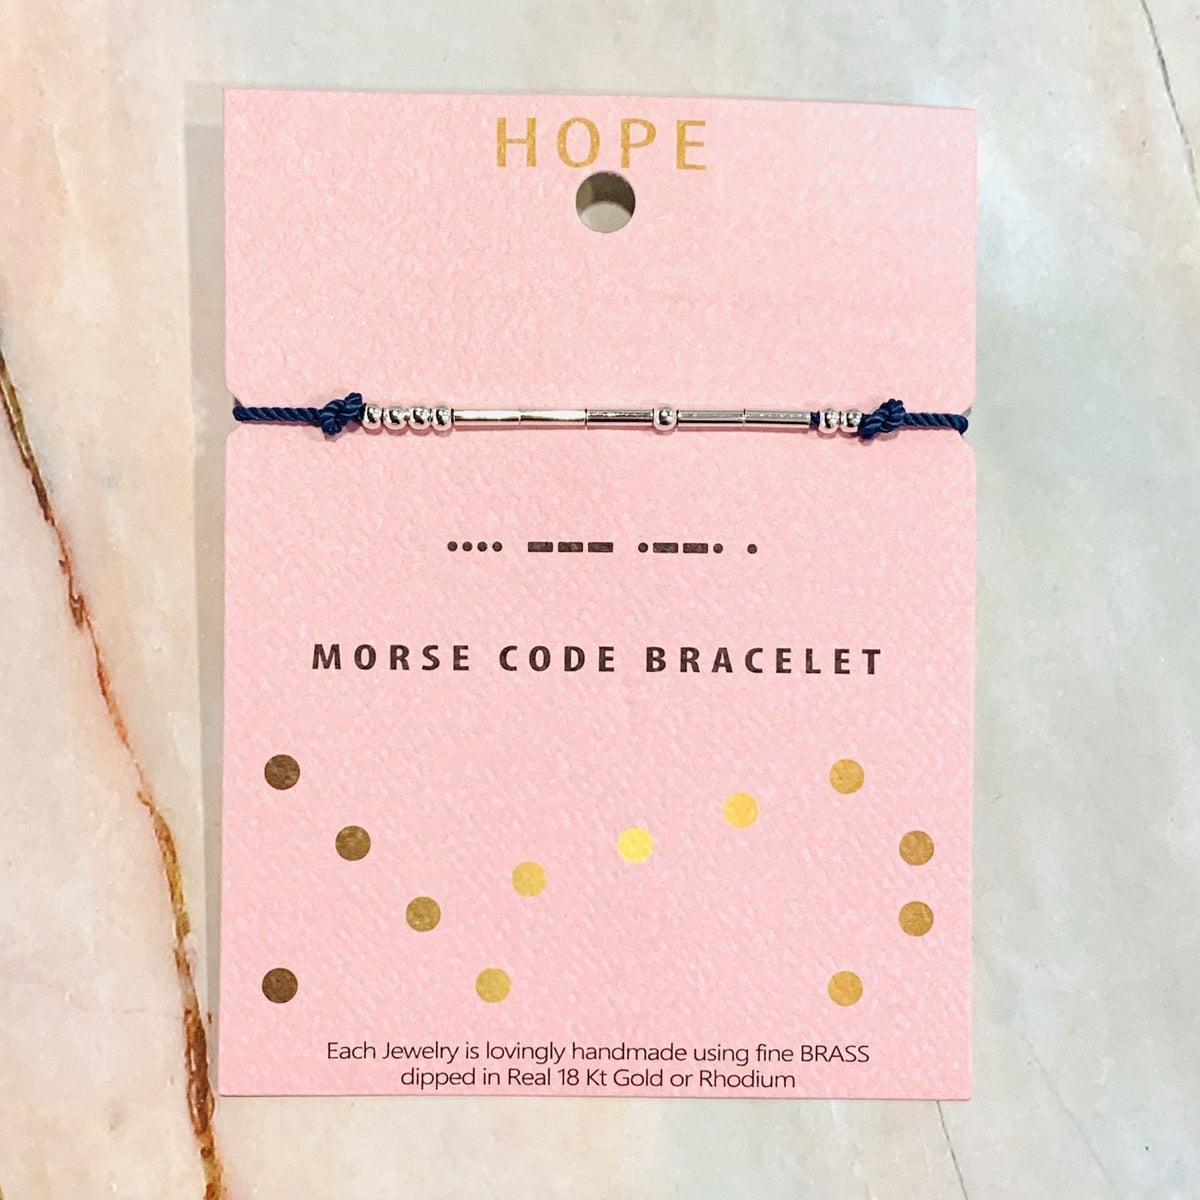 Morse Code Bracelet Lauren-Spencer Hope 